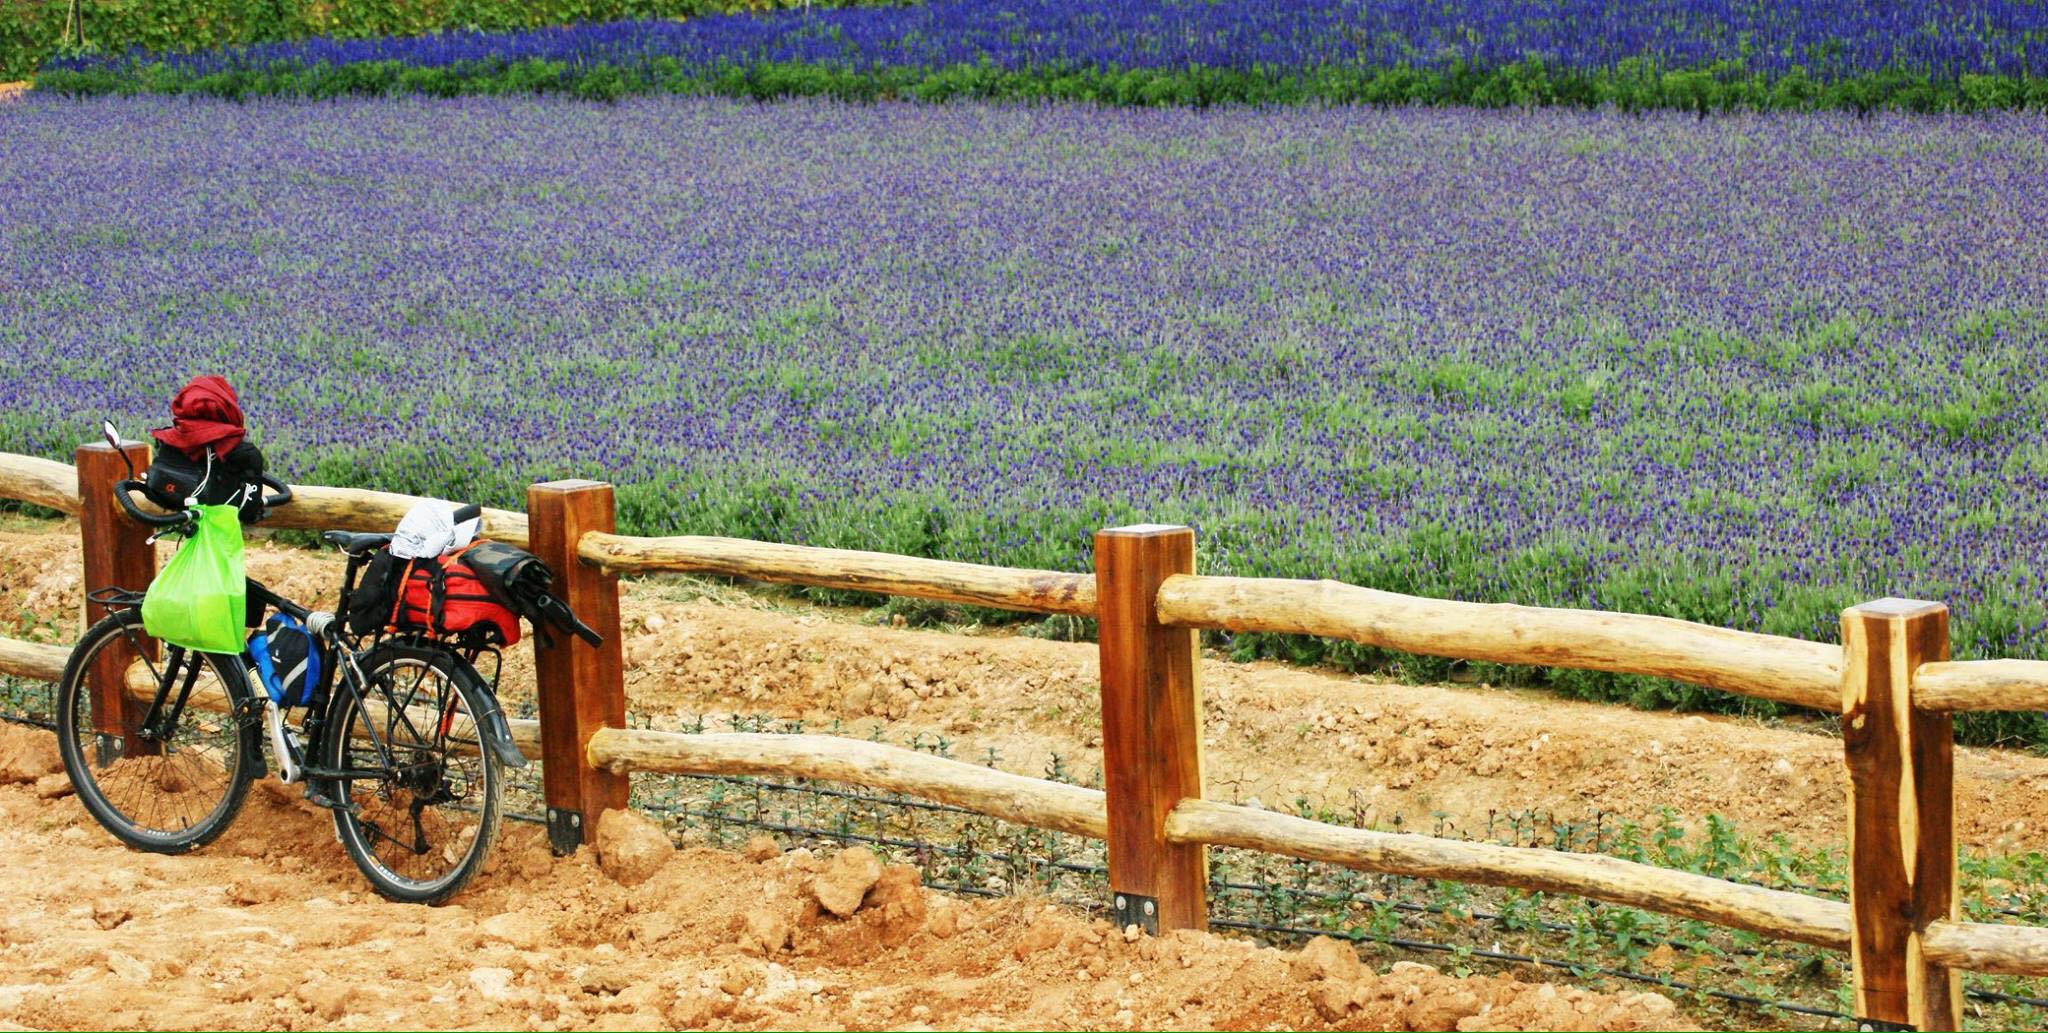 Lung linh ánh tím mùa hoa lavender Đà Lạt - Khoảnh khắc không thể bỏ lỡ 9